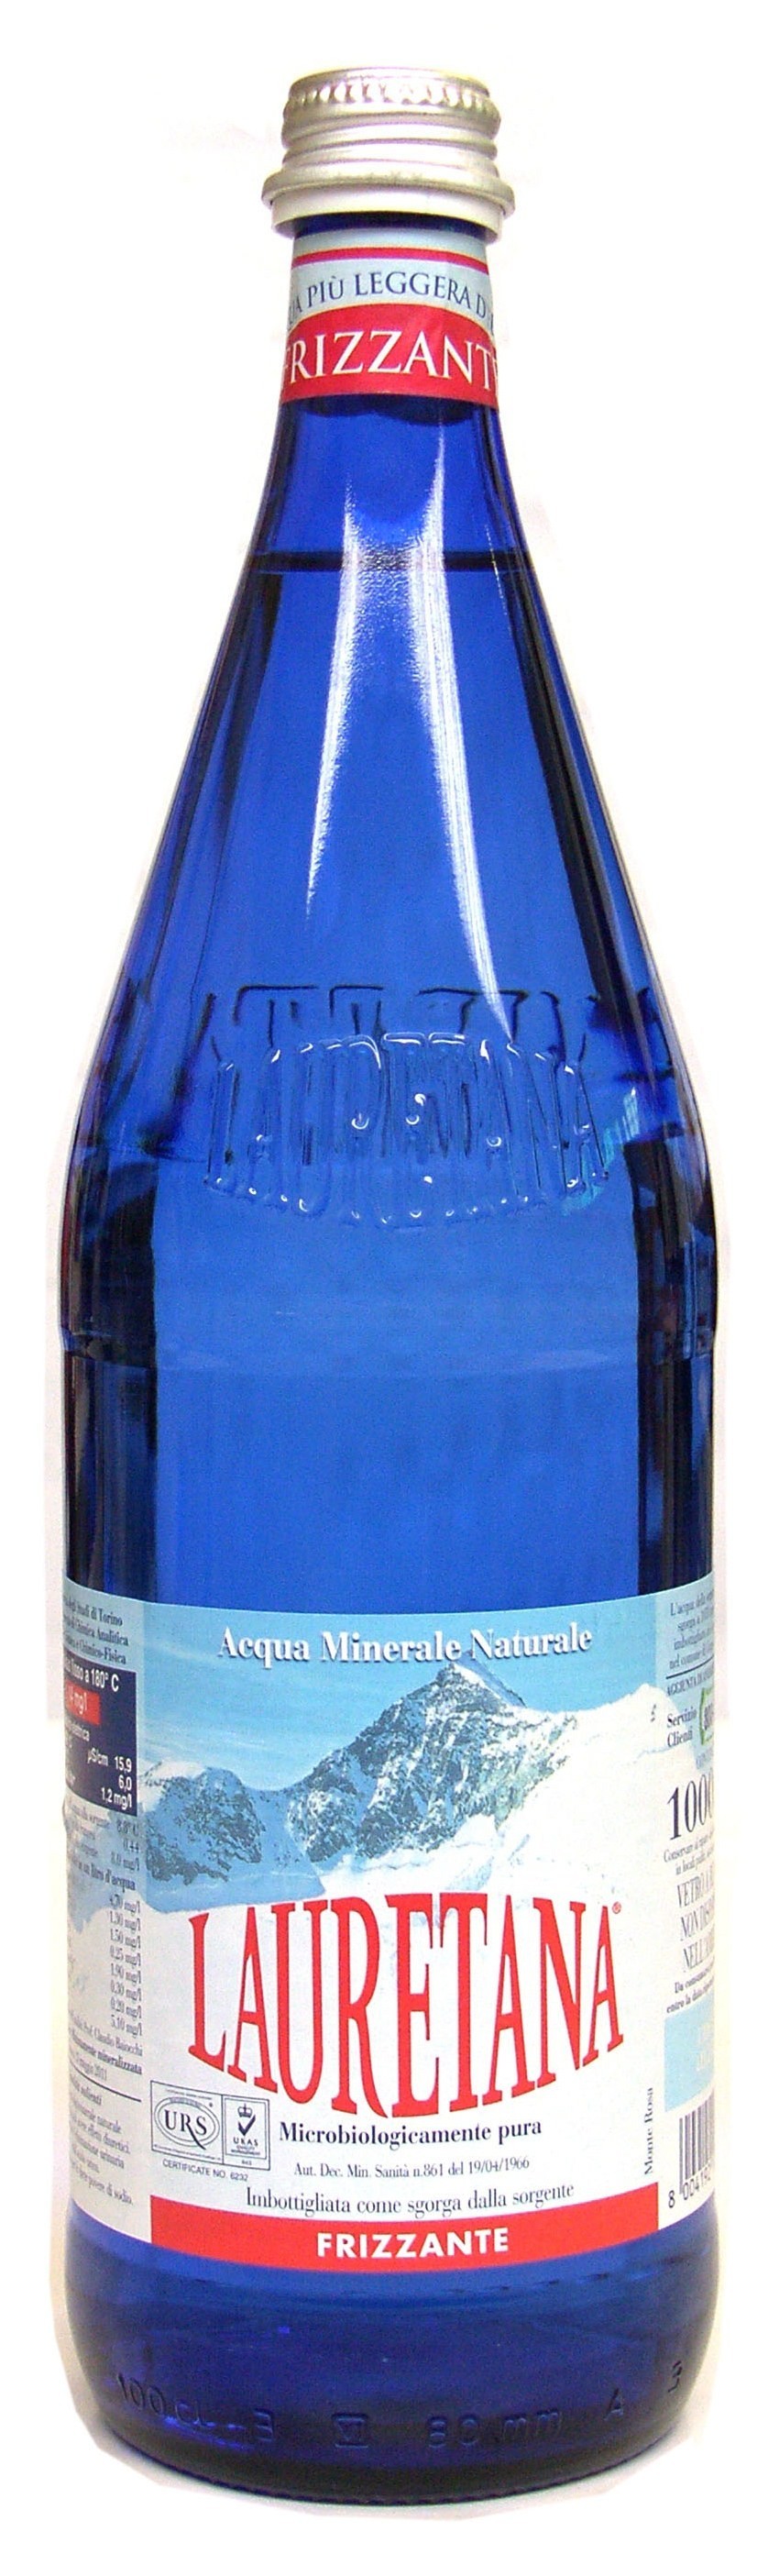 Lauretana Acqua Minerale Naturale Frizzante